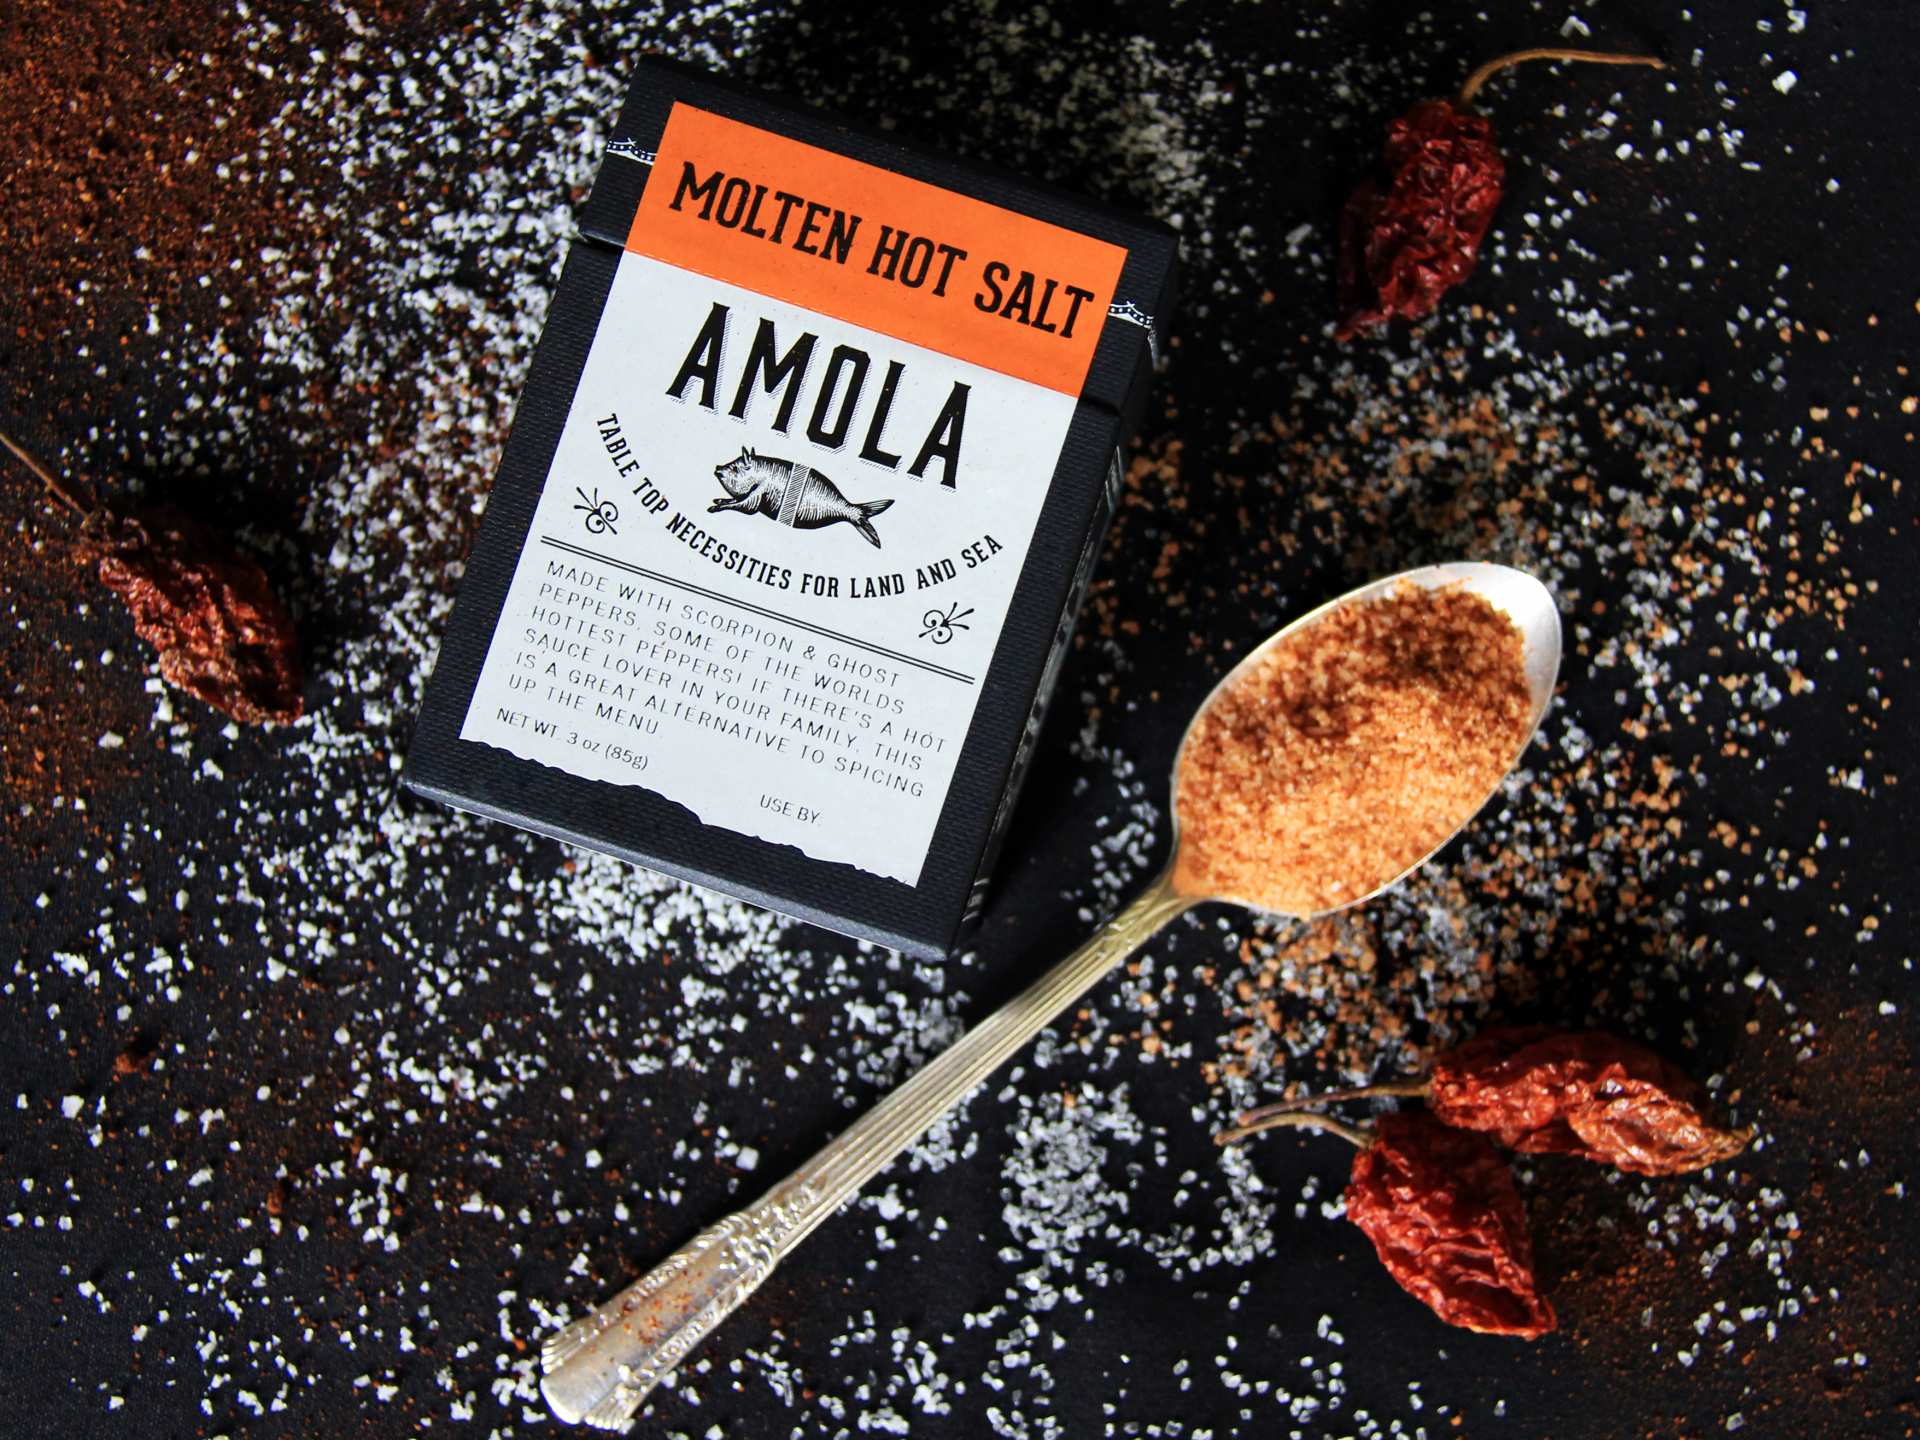 Is salt bad for you? | Amola Molten Hot Salt